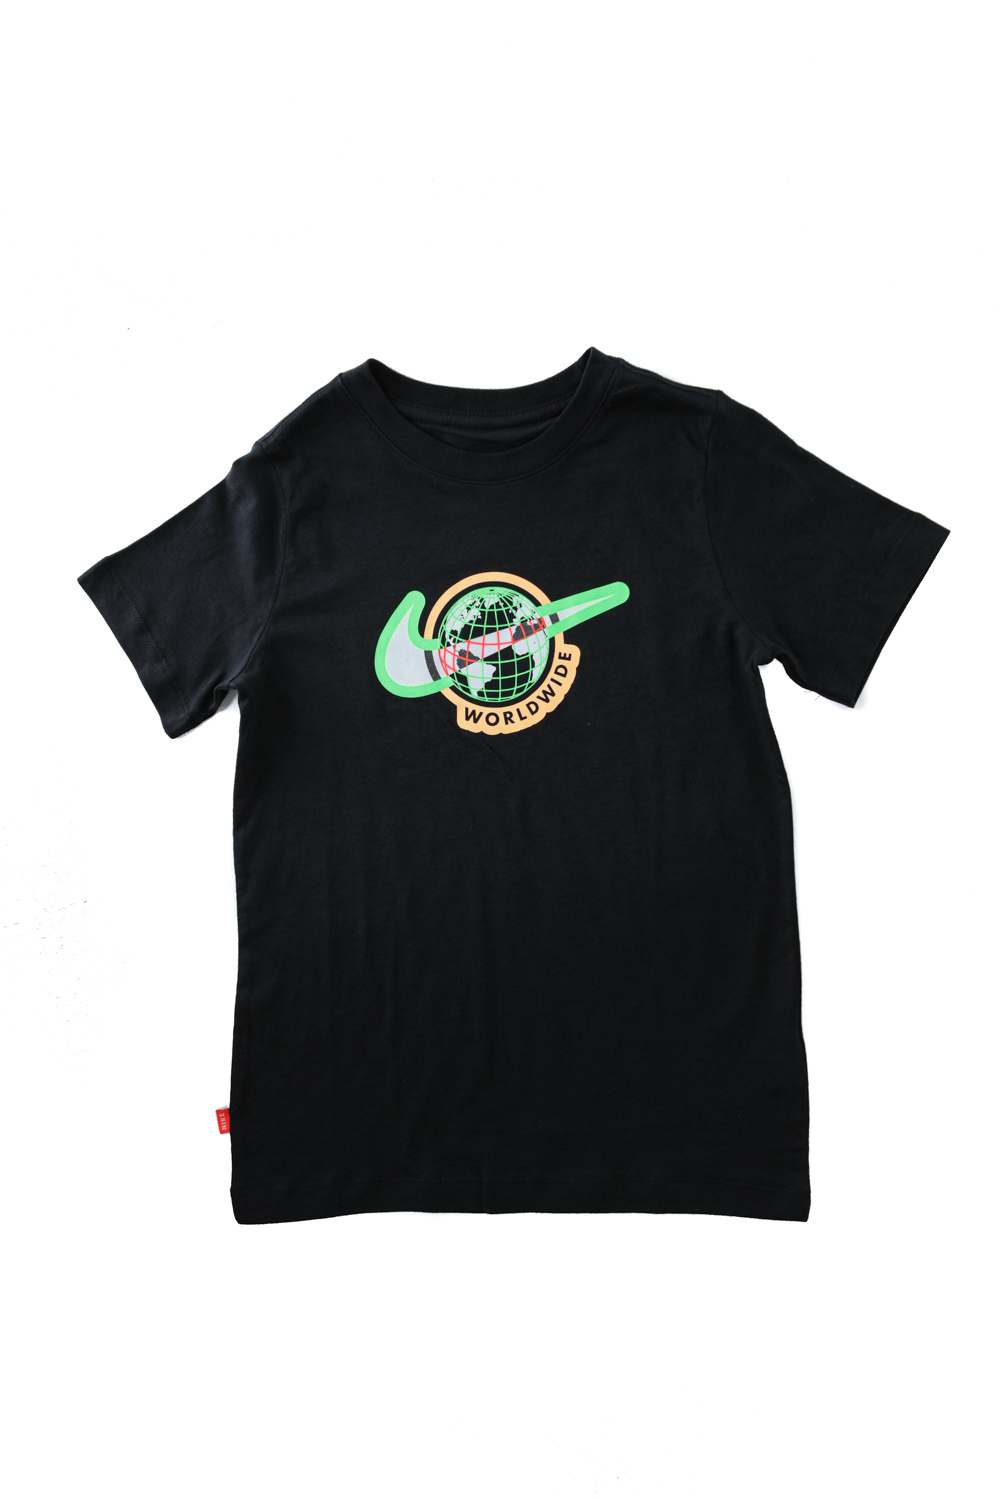 Παιδικά/Boys/Ρούχα/Αθλητικά NIKE - Παιδικό t-shirt ΝΙΚΕ NSW FOOTWEAR 1 μαύρο